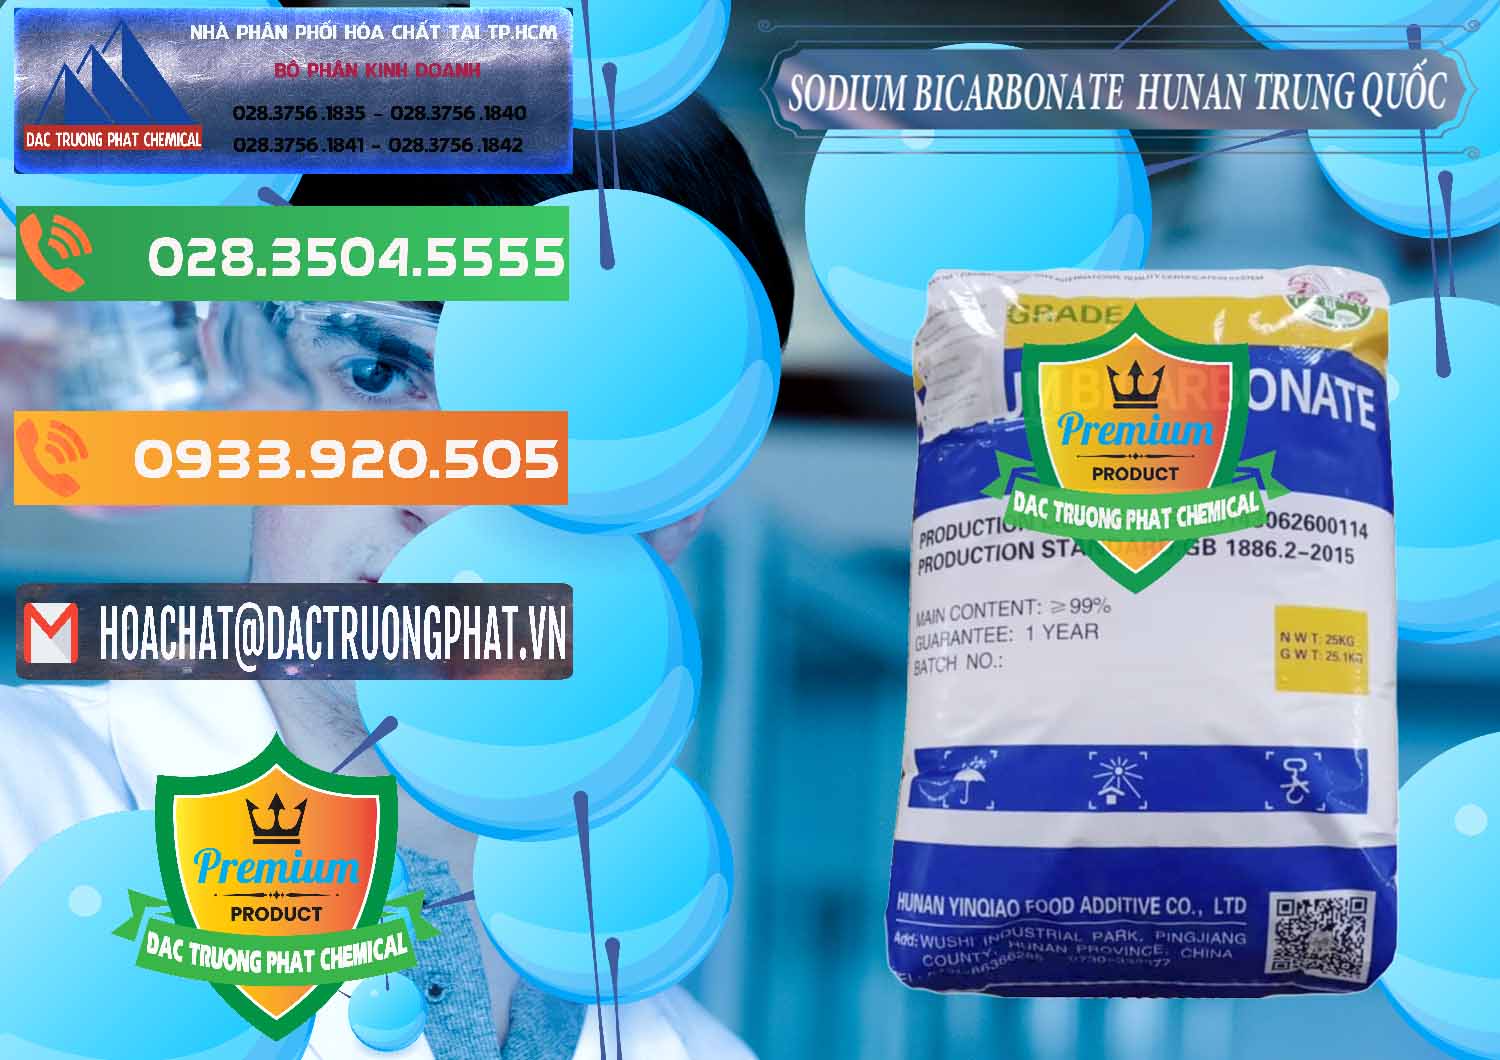 Đơn vị chuyên bán và phân phối Sodium Bicarbonate – Bicar NaHCO3 Hunan Trung Quốc China - 0405 - Cty nhập khẩu - cung cấp hóa chất tại TP.HCM - hoachatxulynuoc.com.vn